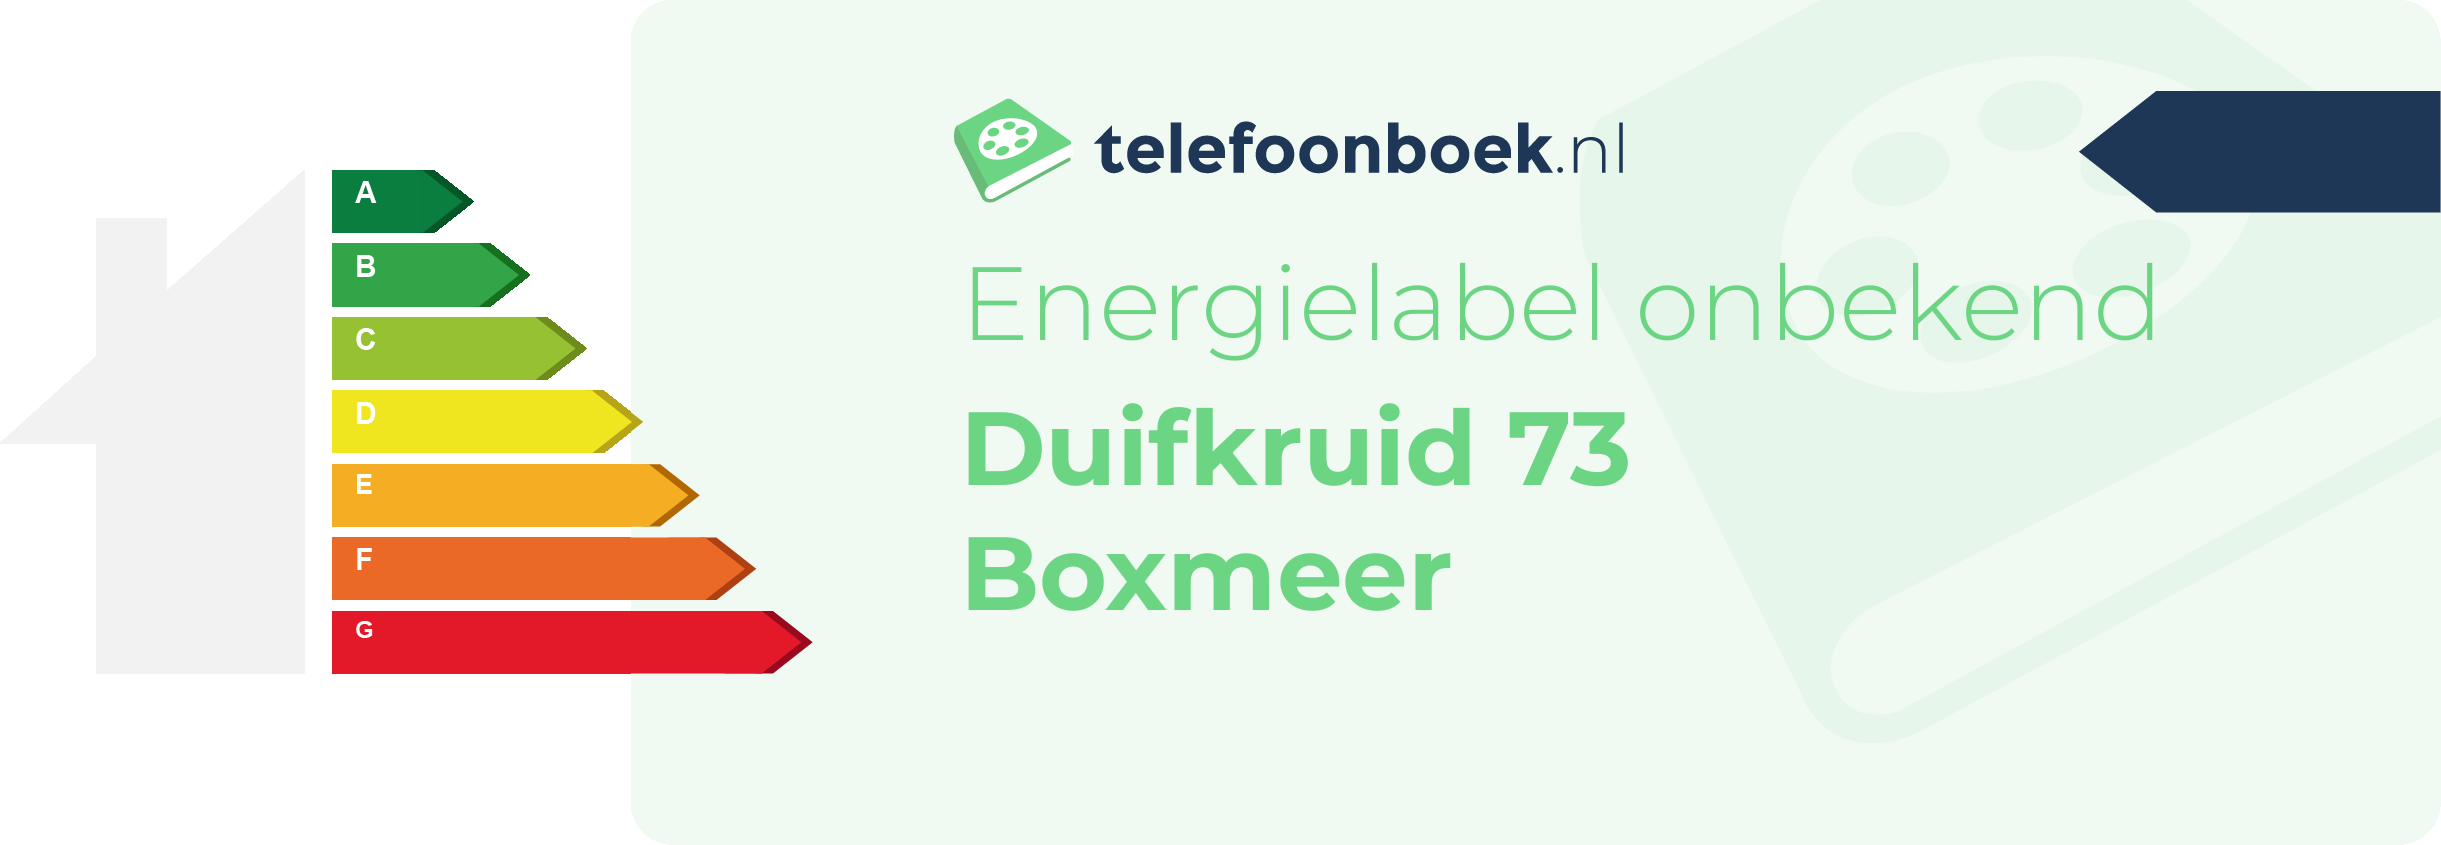 Energielabel Duifkruid 73 Boxmeer